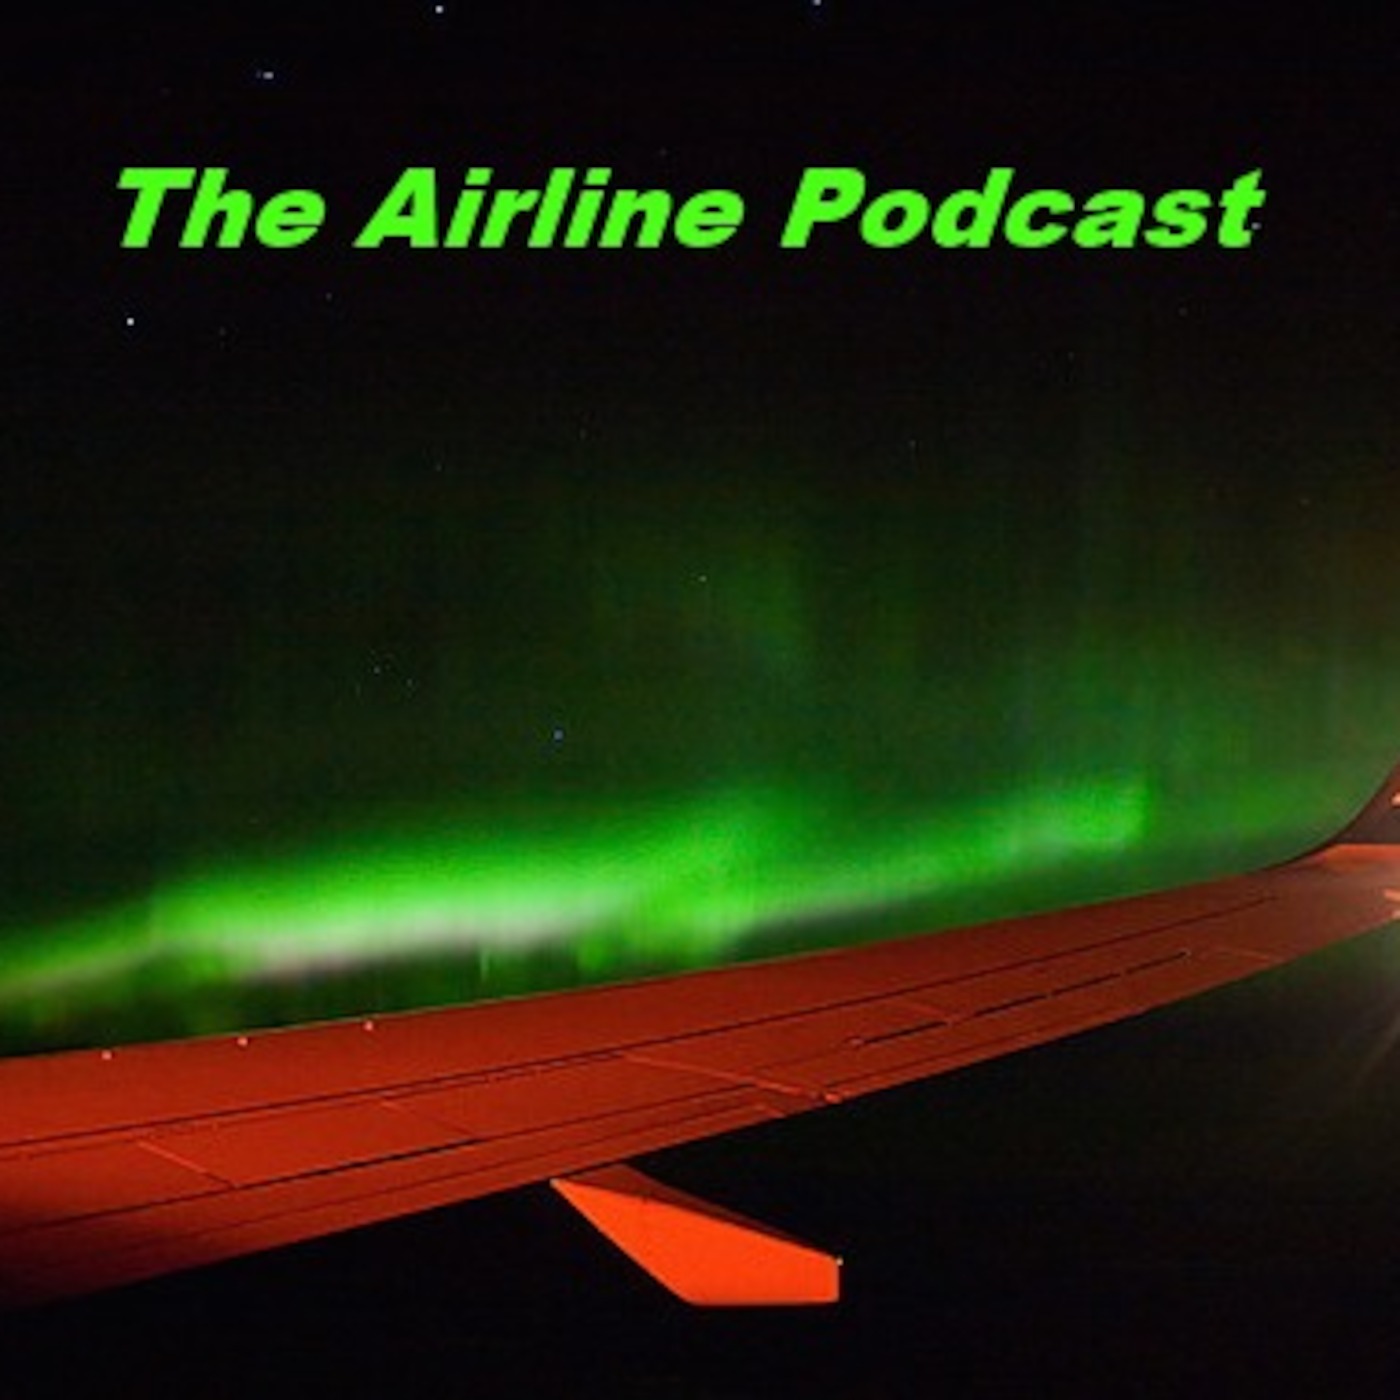 Episode 3 - Alaska Airlines